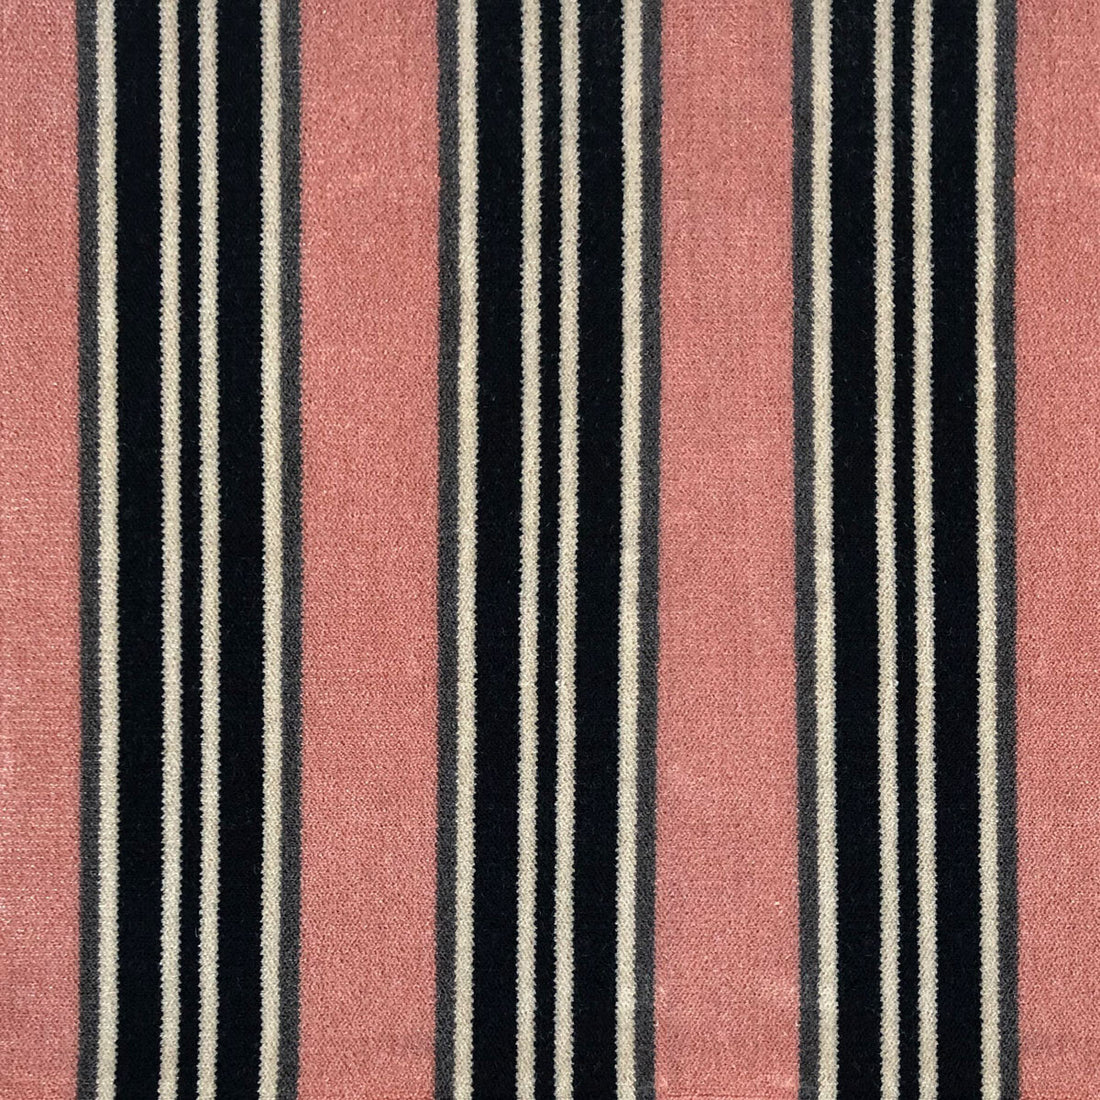 Tucha fabric in rosa color - pattern LCT1051.005.0 - by Gaston y Daniela in the Lorenzo Castillo VI collection